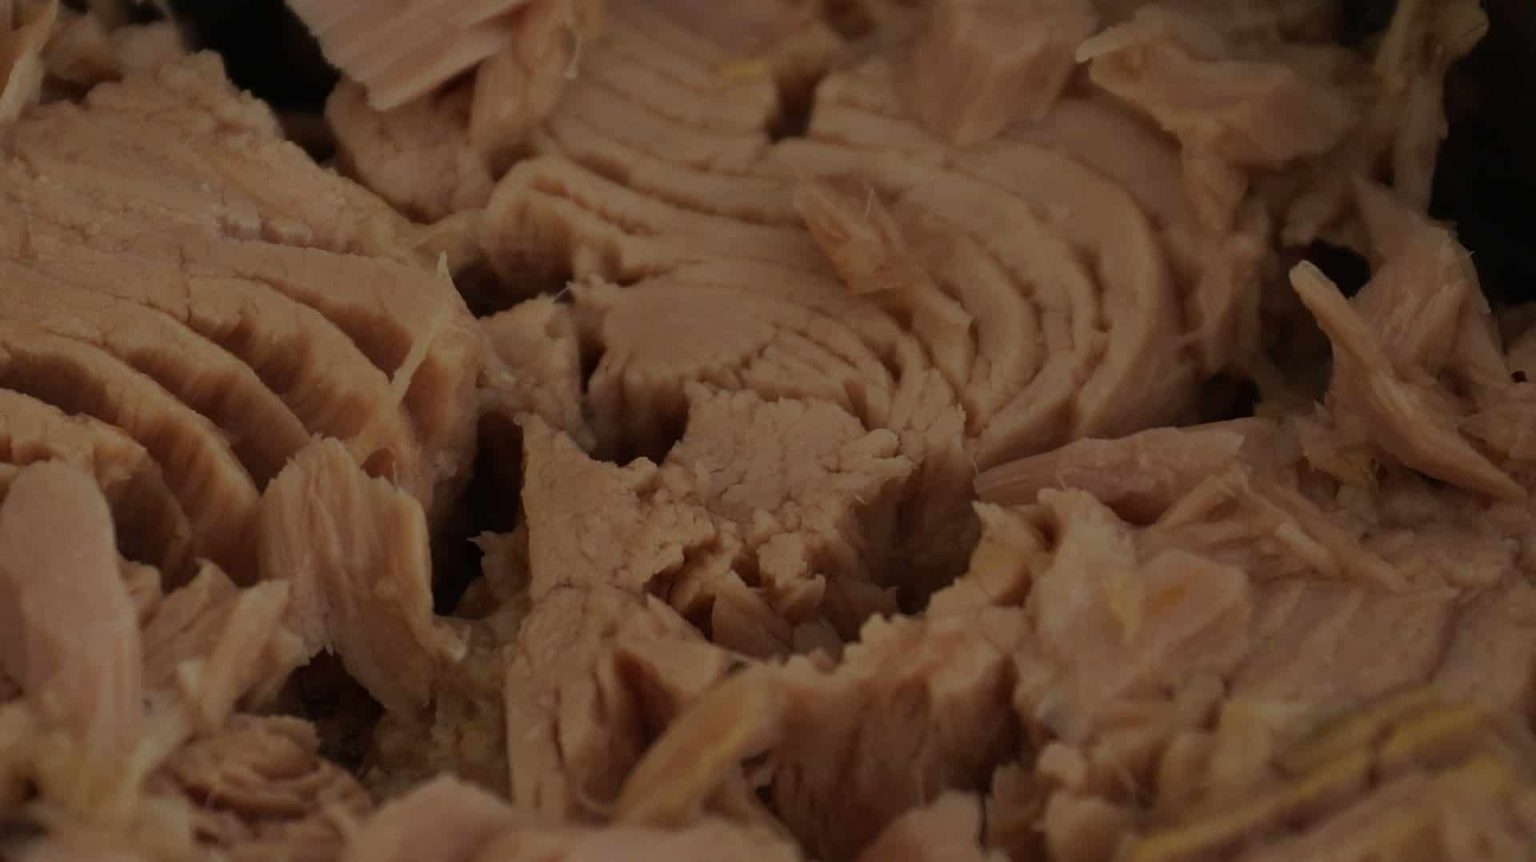 Dürfen Hunde Thunfisch aus der Dose essen? (Ja, oder Nein?)